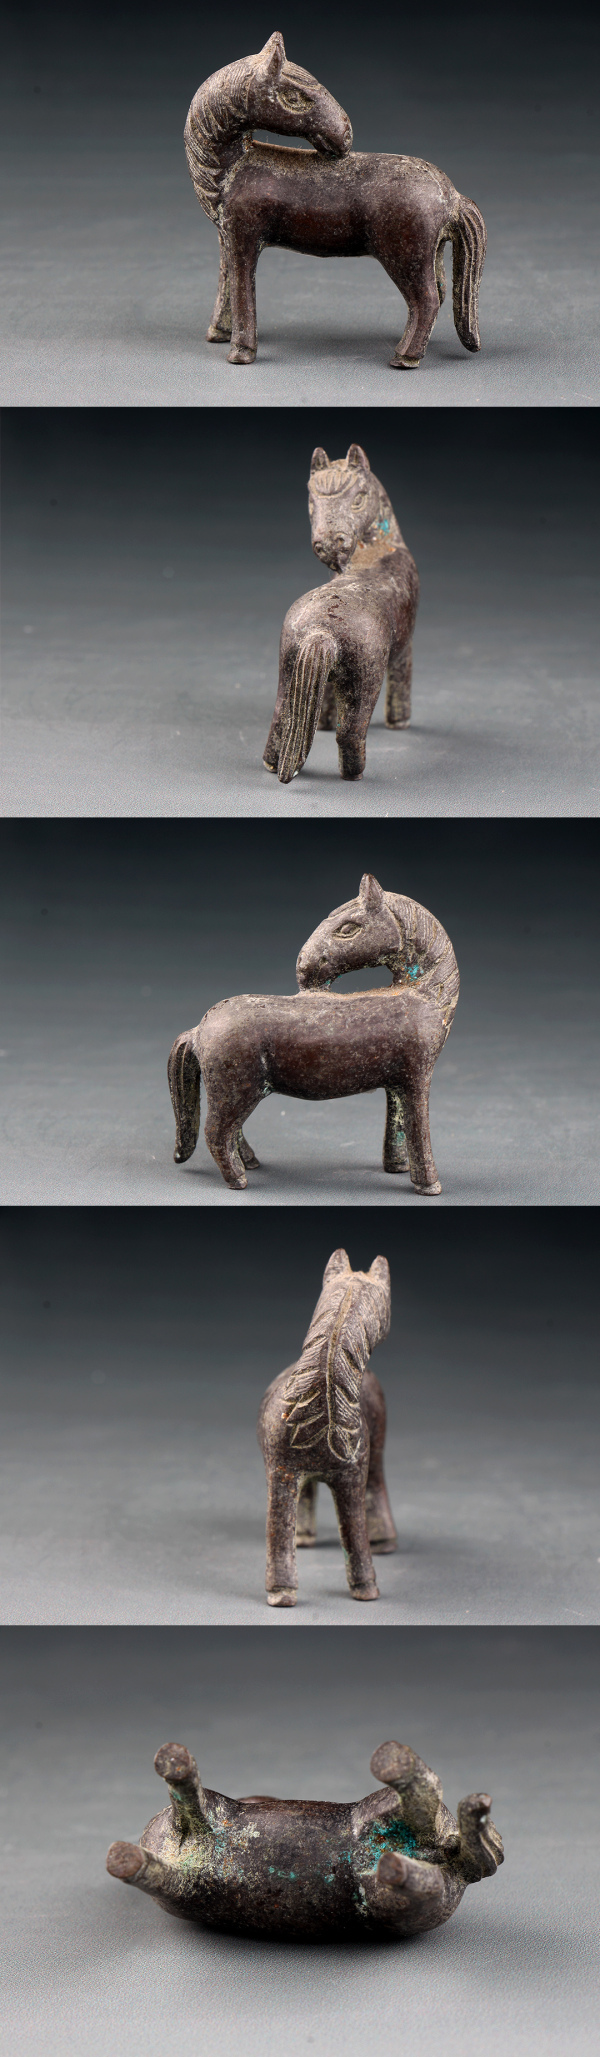 古玩铜器【6800-06】民国 铜制马雕件一组拍卖，当前价格2980元